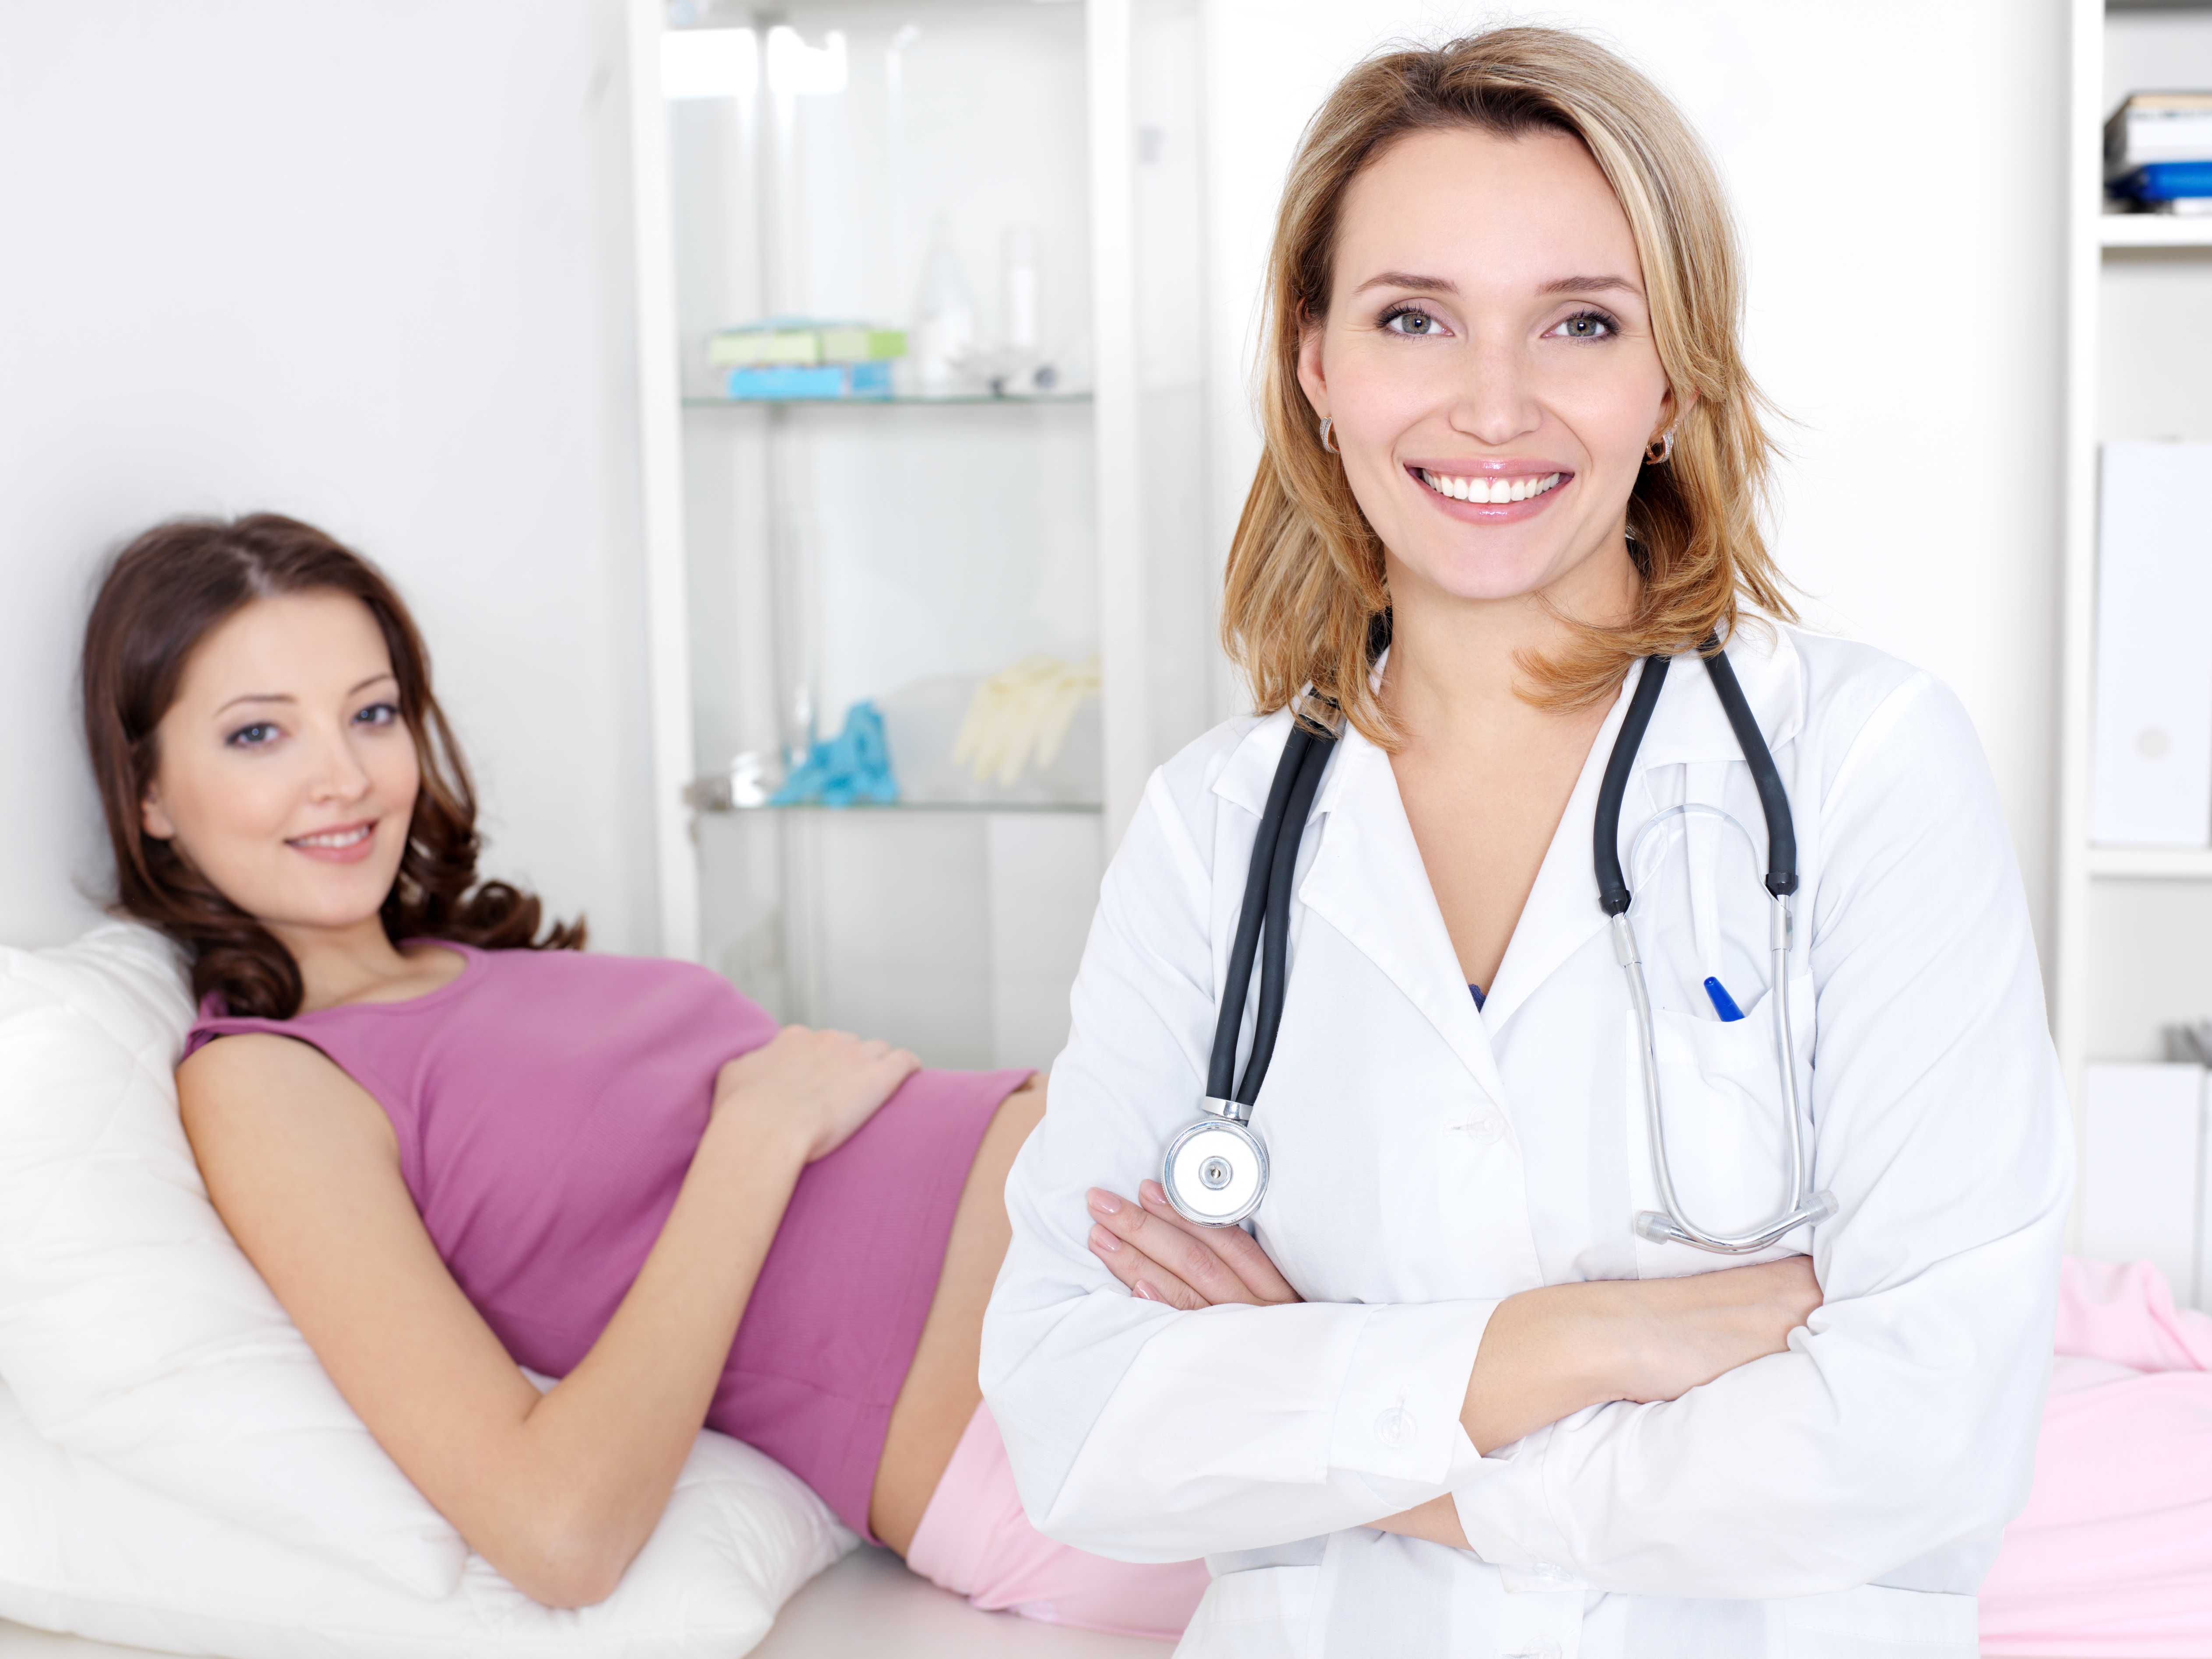 Fertility Clinics Market